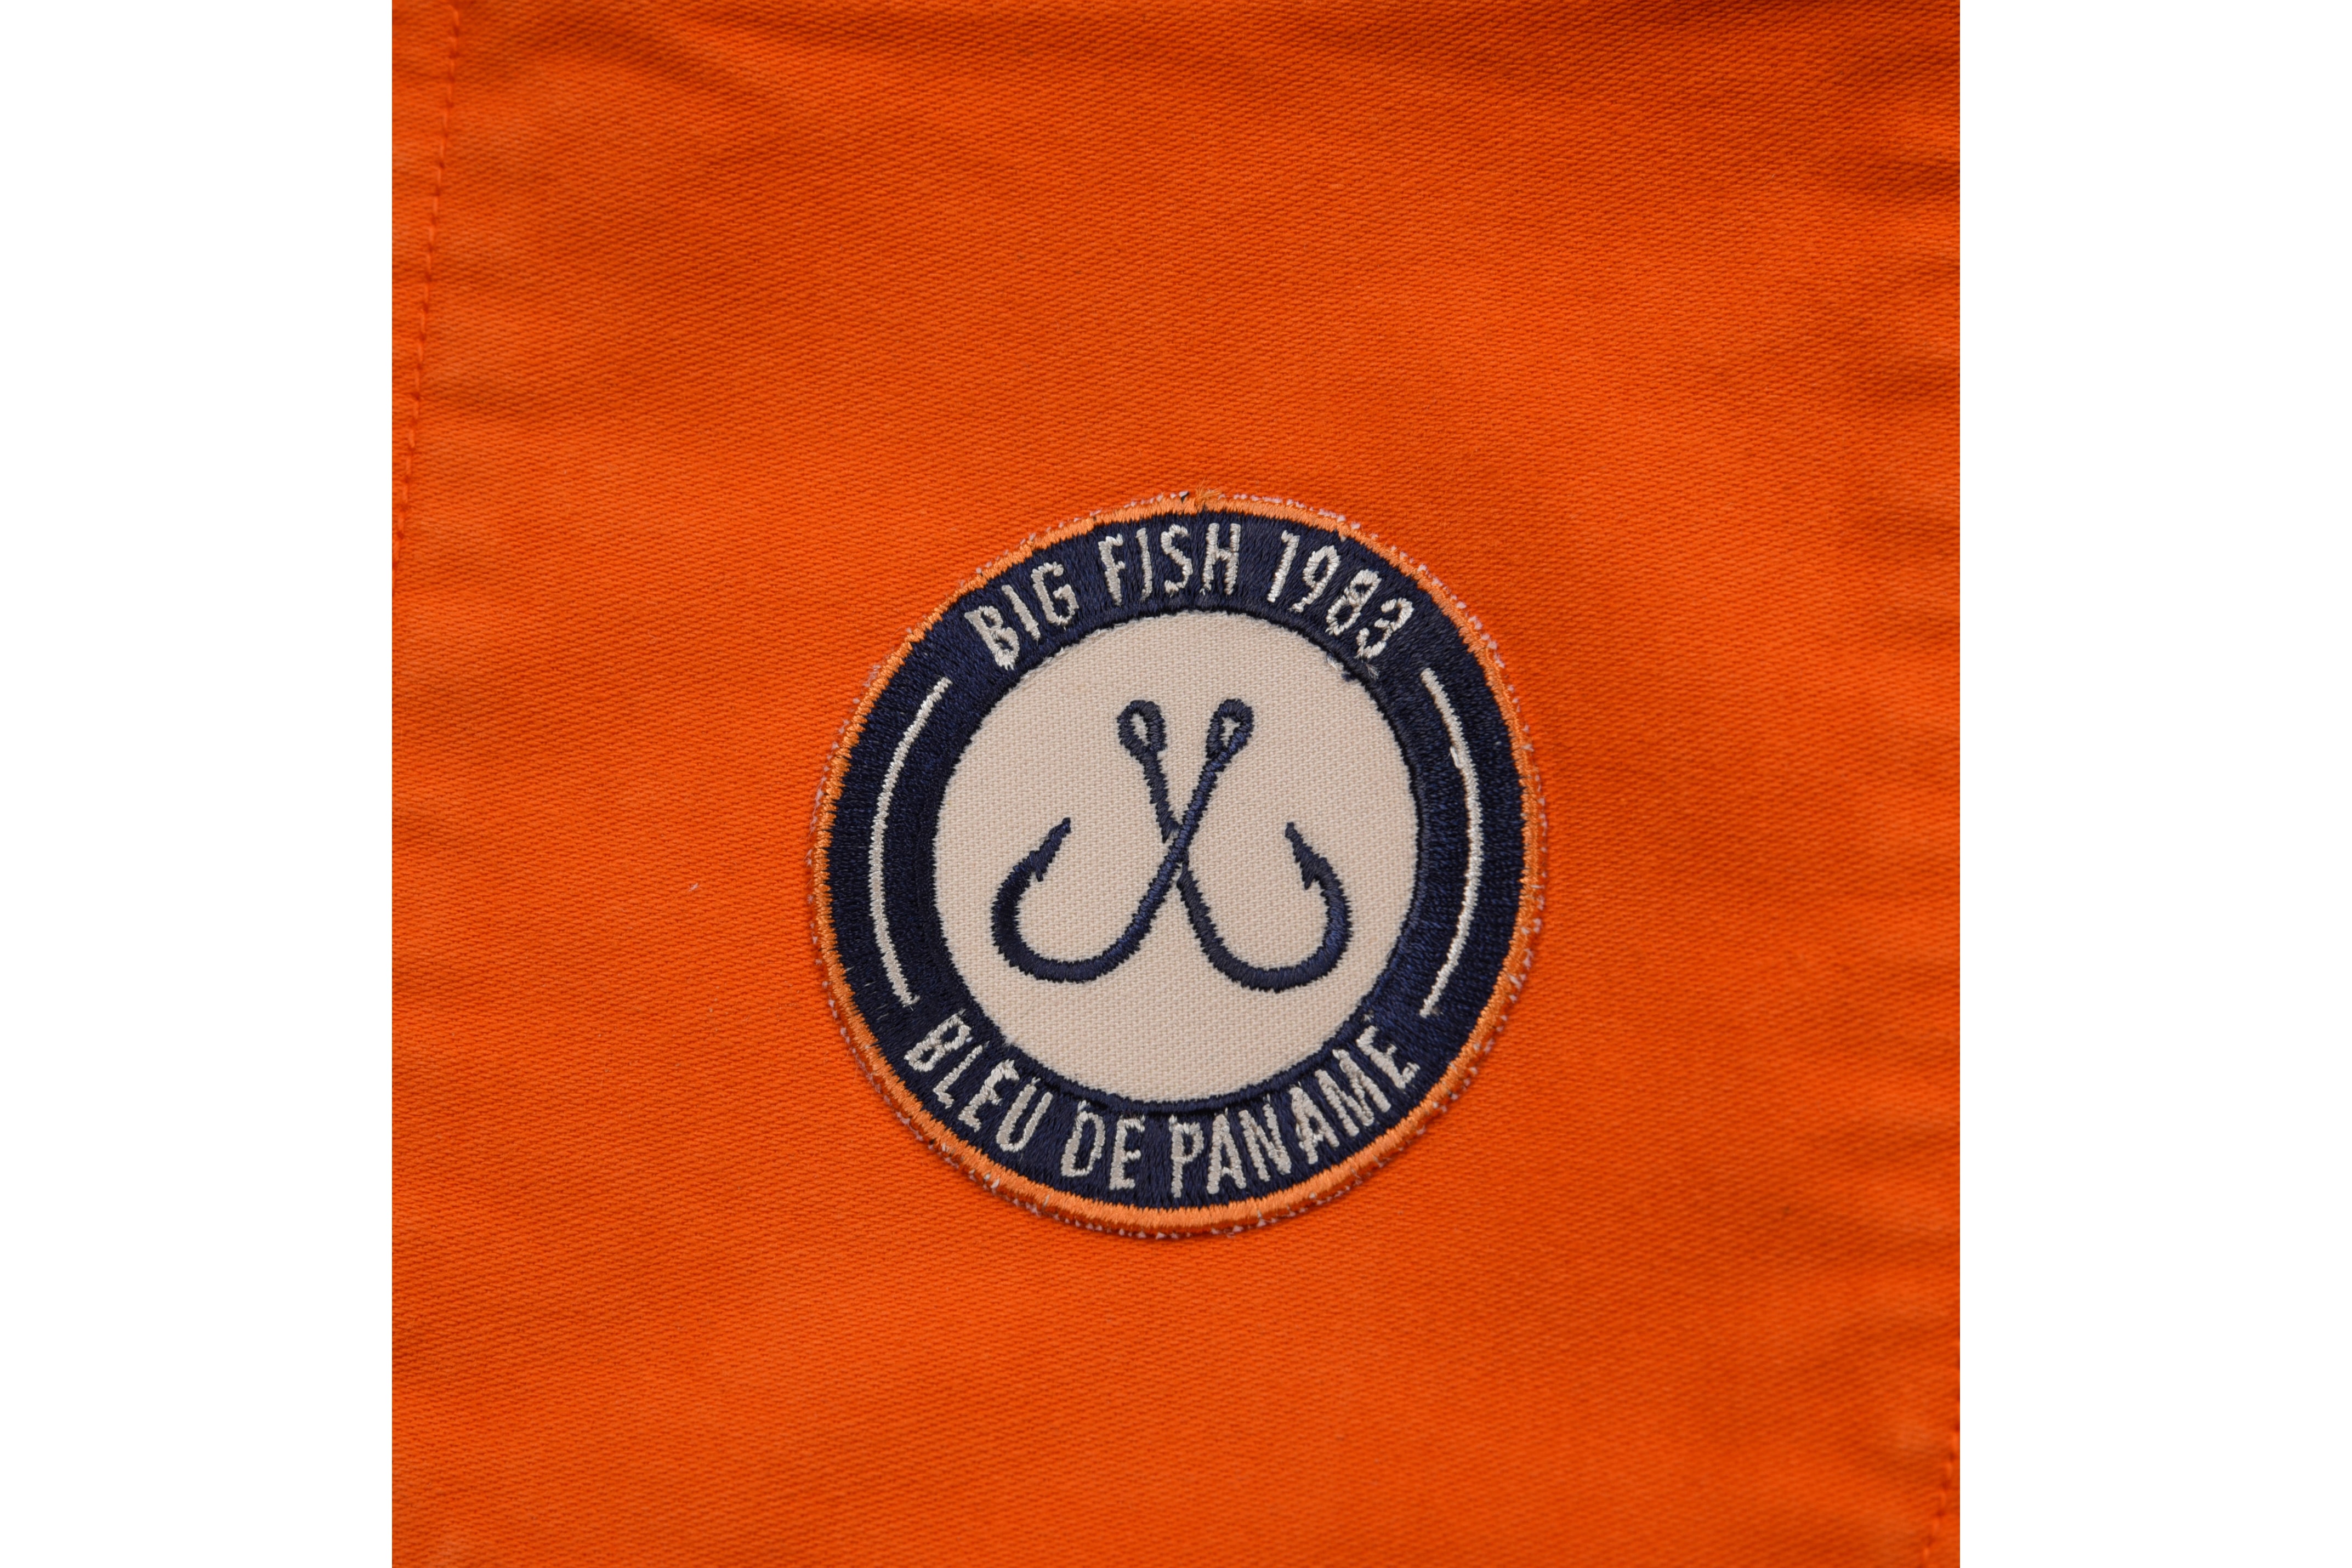 Bleu de Paname Big Fish 1983